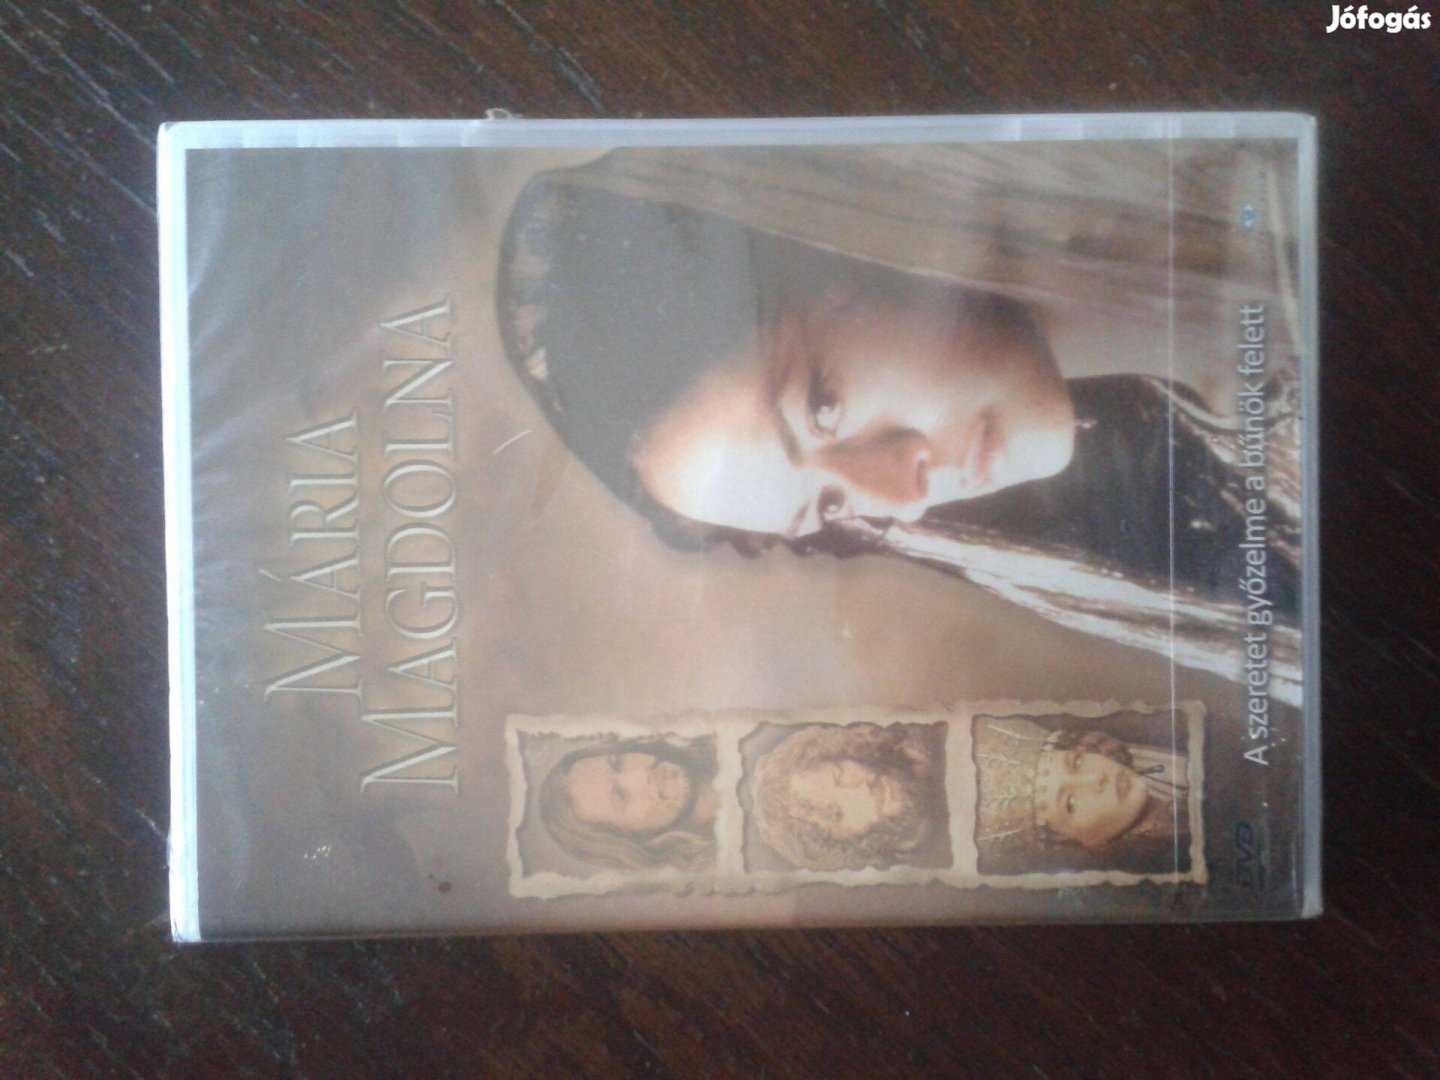 Mária Magdolna DVD